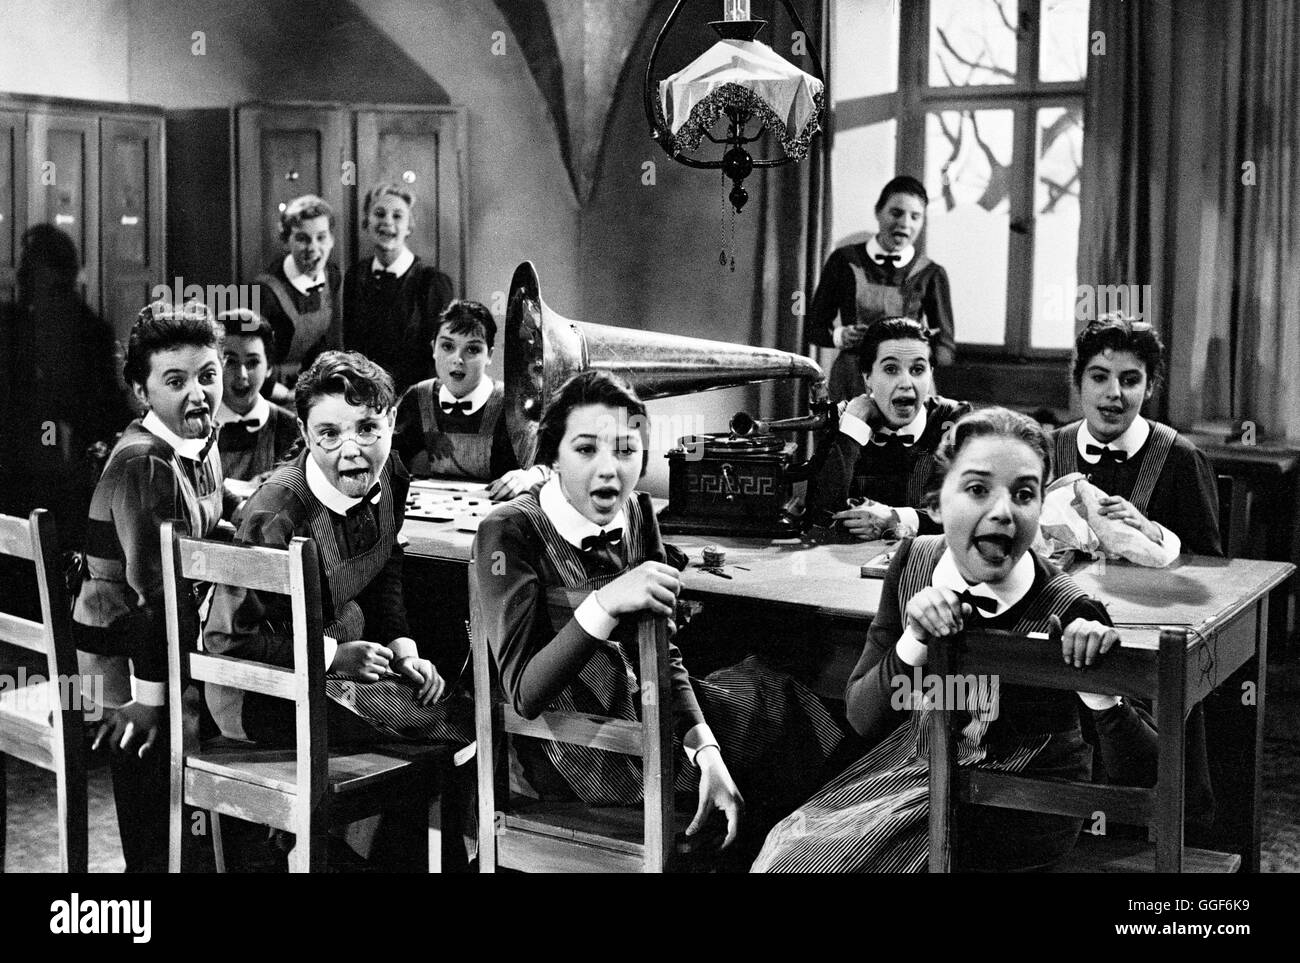 MÄDCHEN IN UNIFORM / Deutschland 1958 / GÄza von Radvanyi CHRISTINE KAUFMANN in einer Szene aus 'Mädchen in Uniform', 1958. Regie: GÄza von Radvnyi Stock Photo